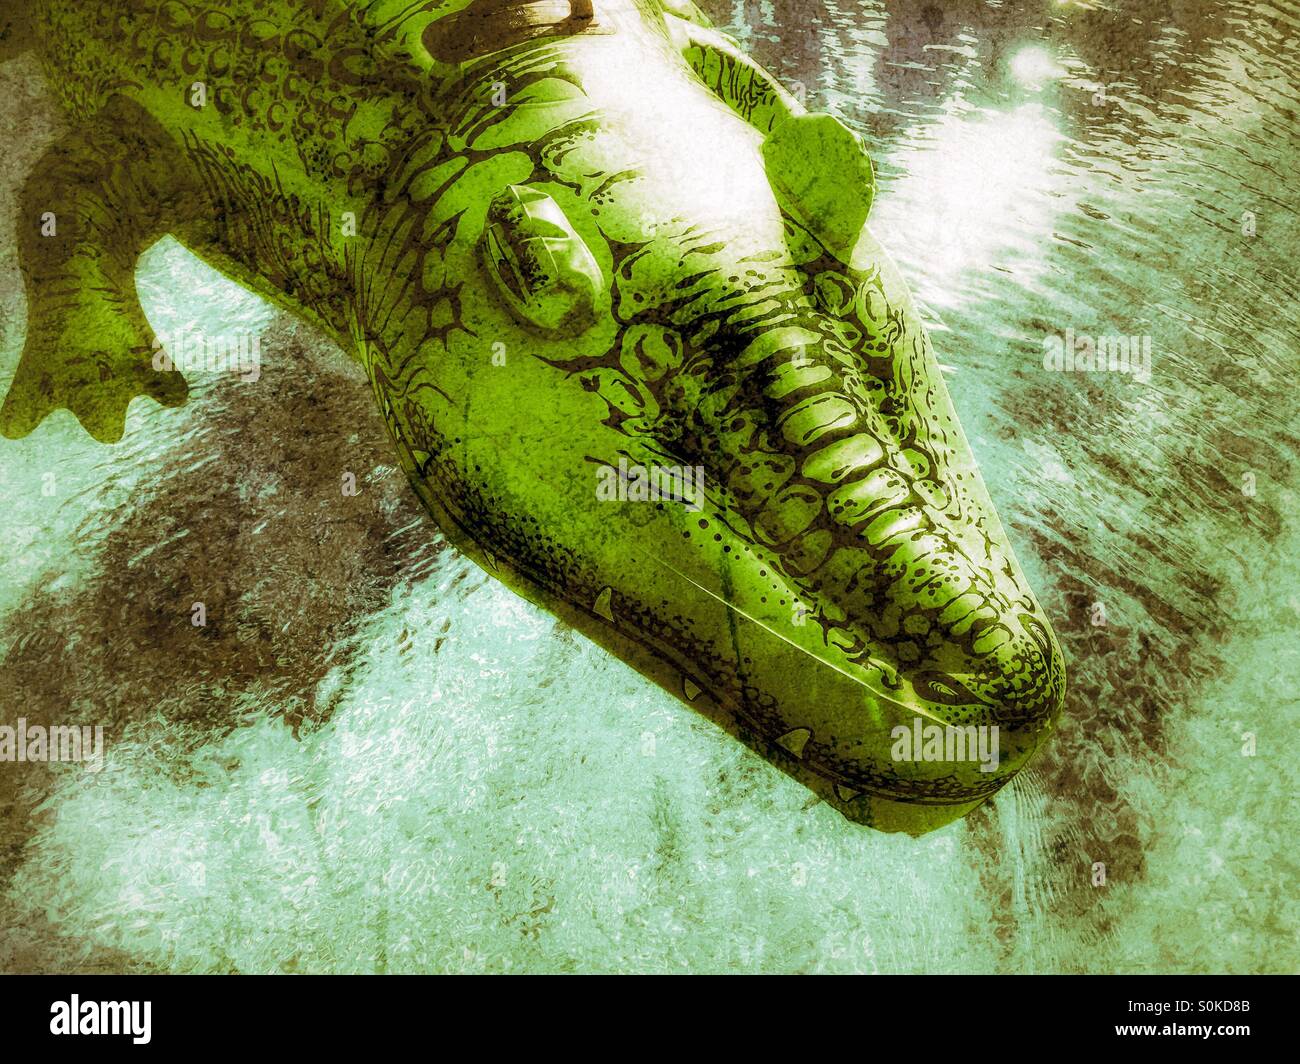 Jouet gonflable vert aligator flottant dans l'eau des piscines. Grungy modifier. Banque D'Images